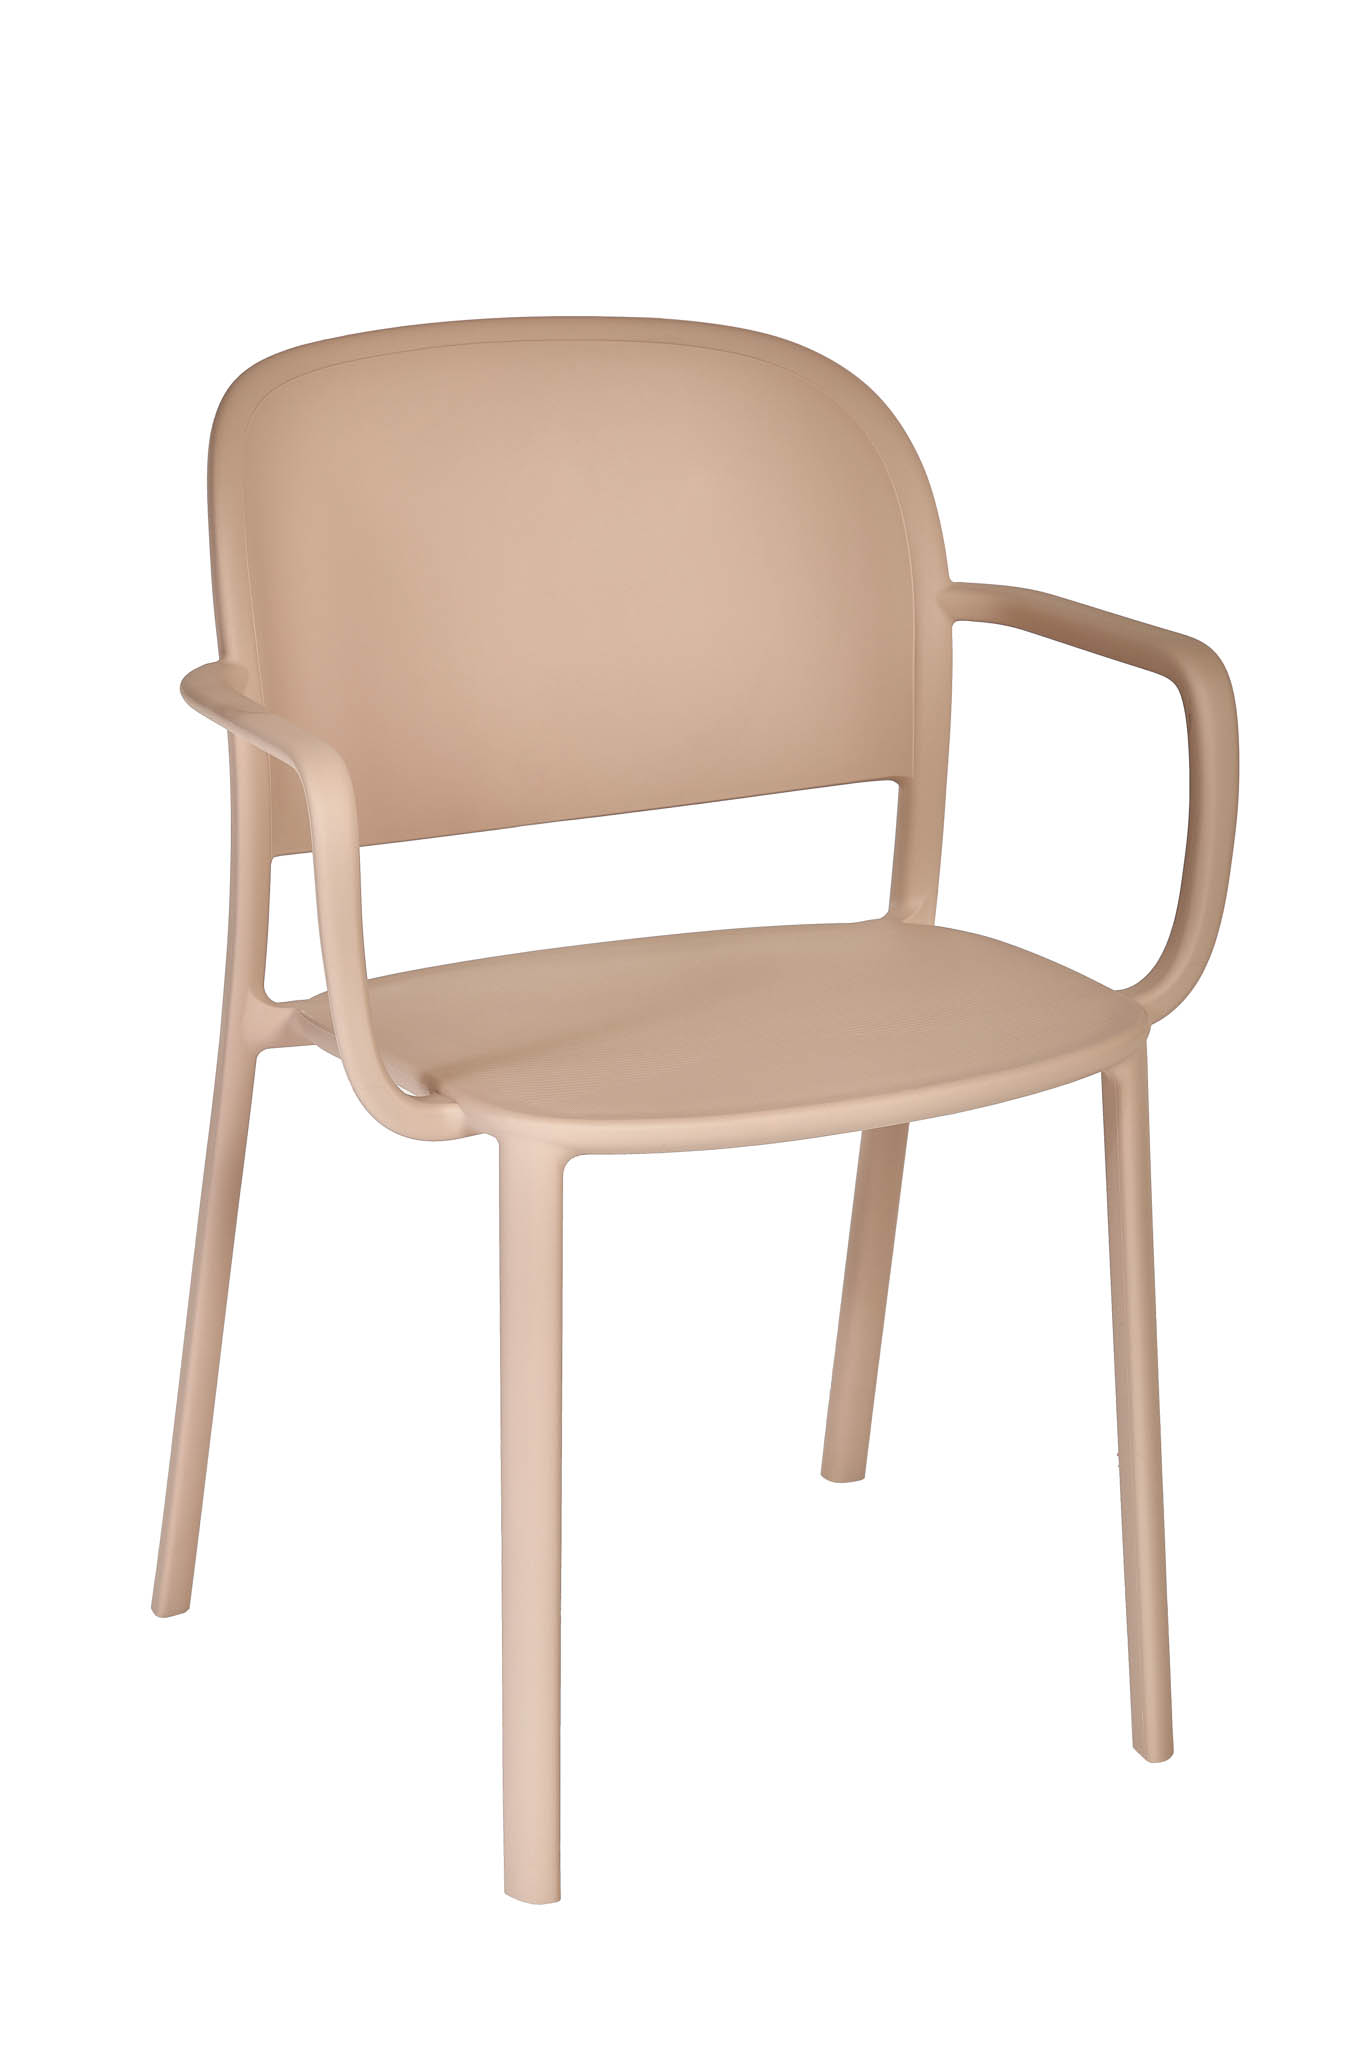 AD hotelska oprema Fotelja 01 - Soft pink boje slika proizvoda